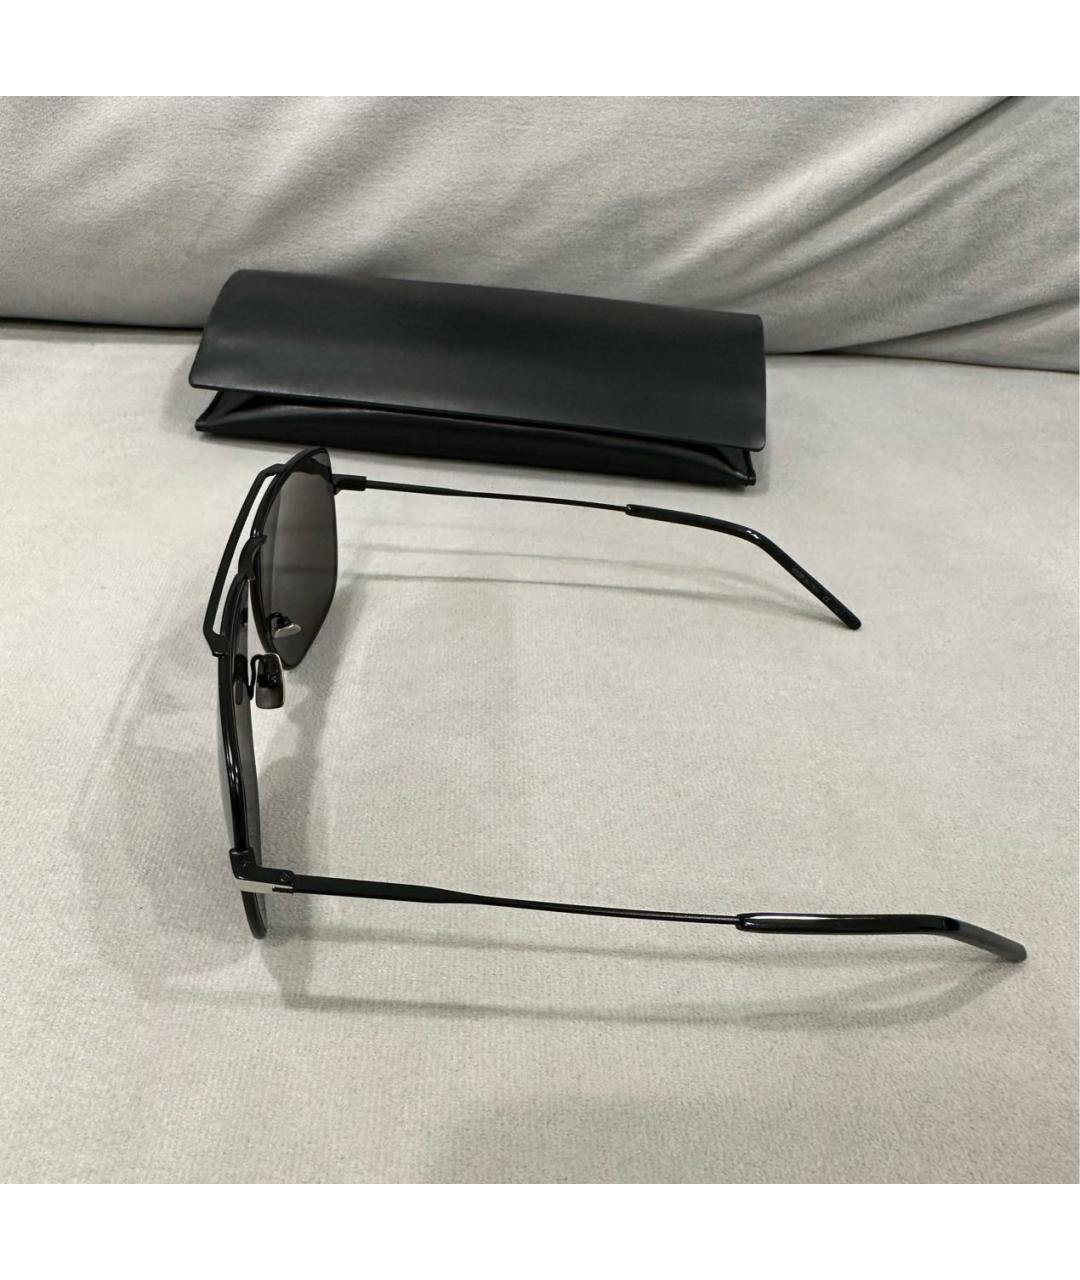 SAINT LAURENT Черные металлические солнцезащитные очки, фото 3